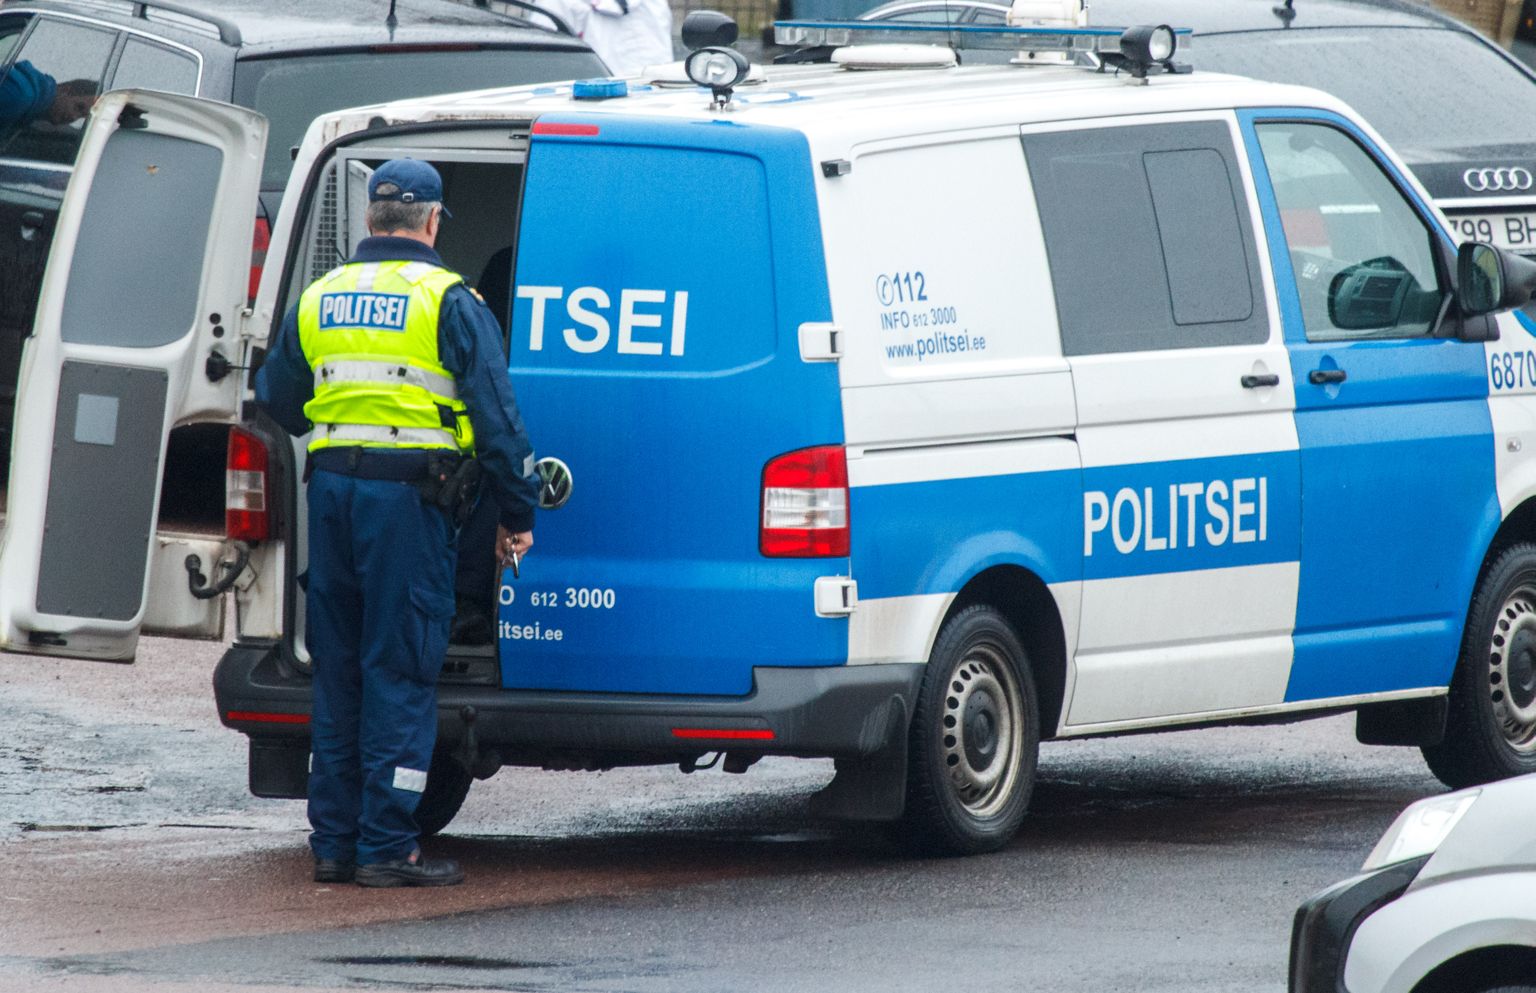 Politsei
Pildil korrakaitsjad Säästumarketi ees viimas ära arvatavat poevarast. 


Foto: Arvo Meeks/Valgamaalane